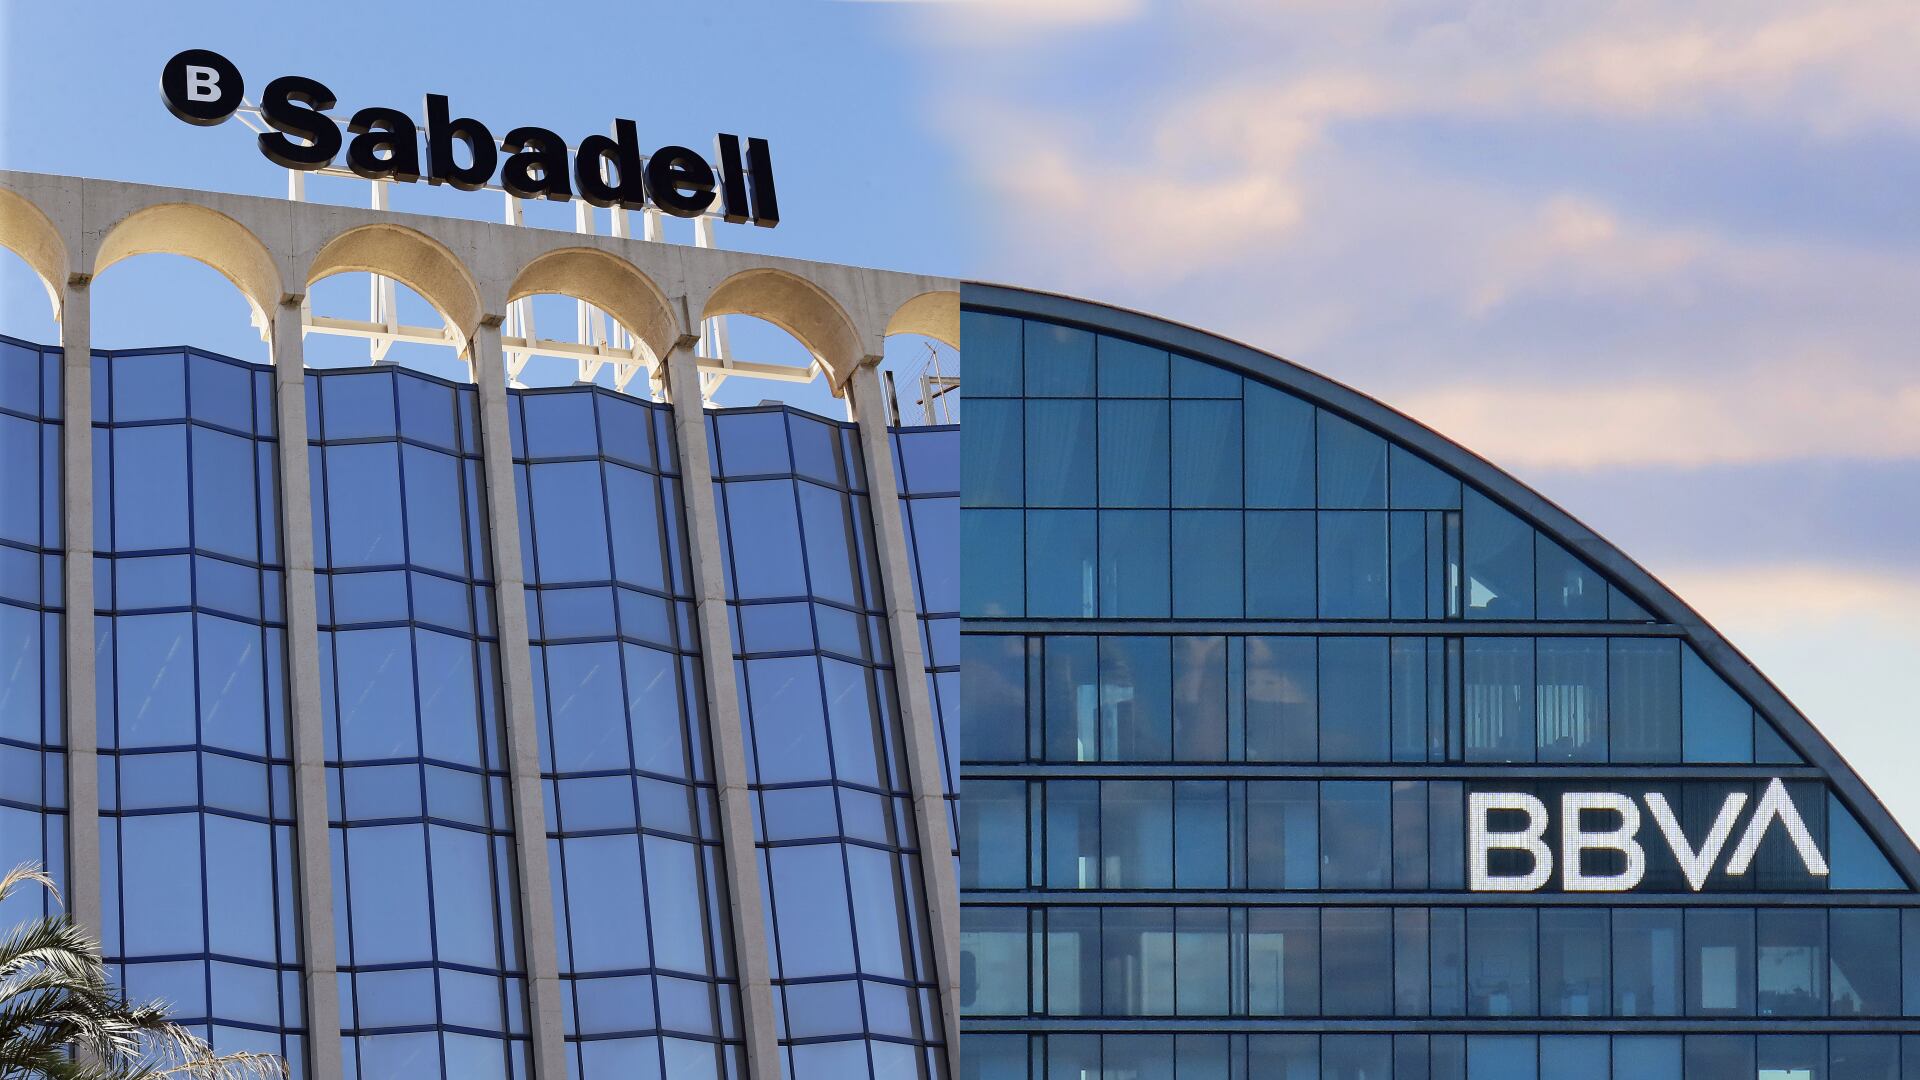 bbva anuncia una oferta hostil para absorber el banco sabadell con la oposición del gobierno